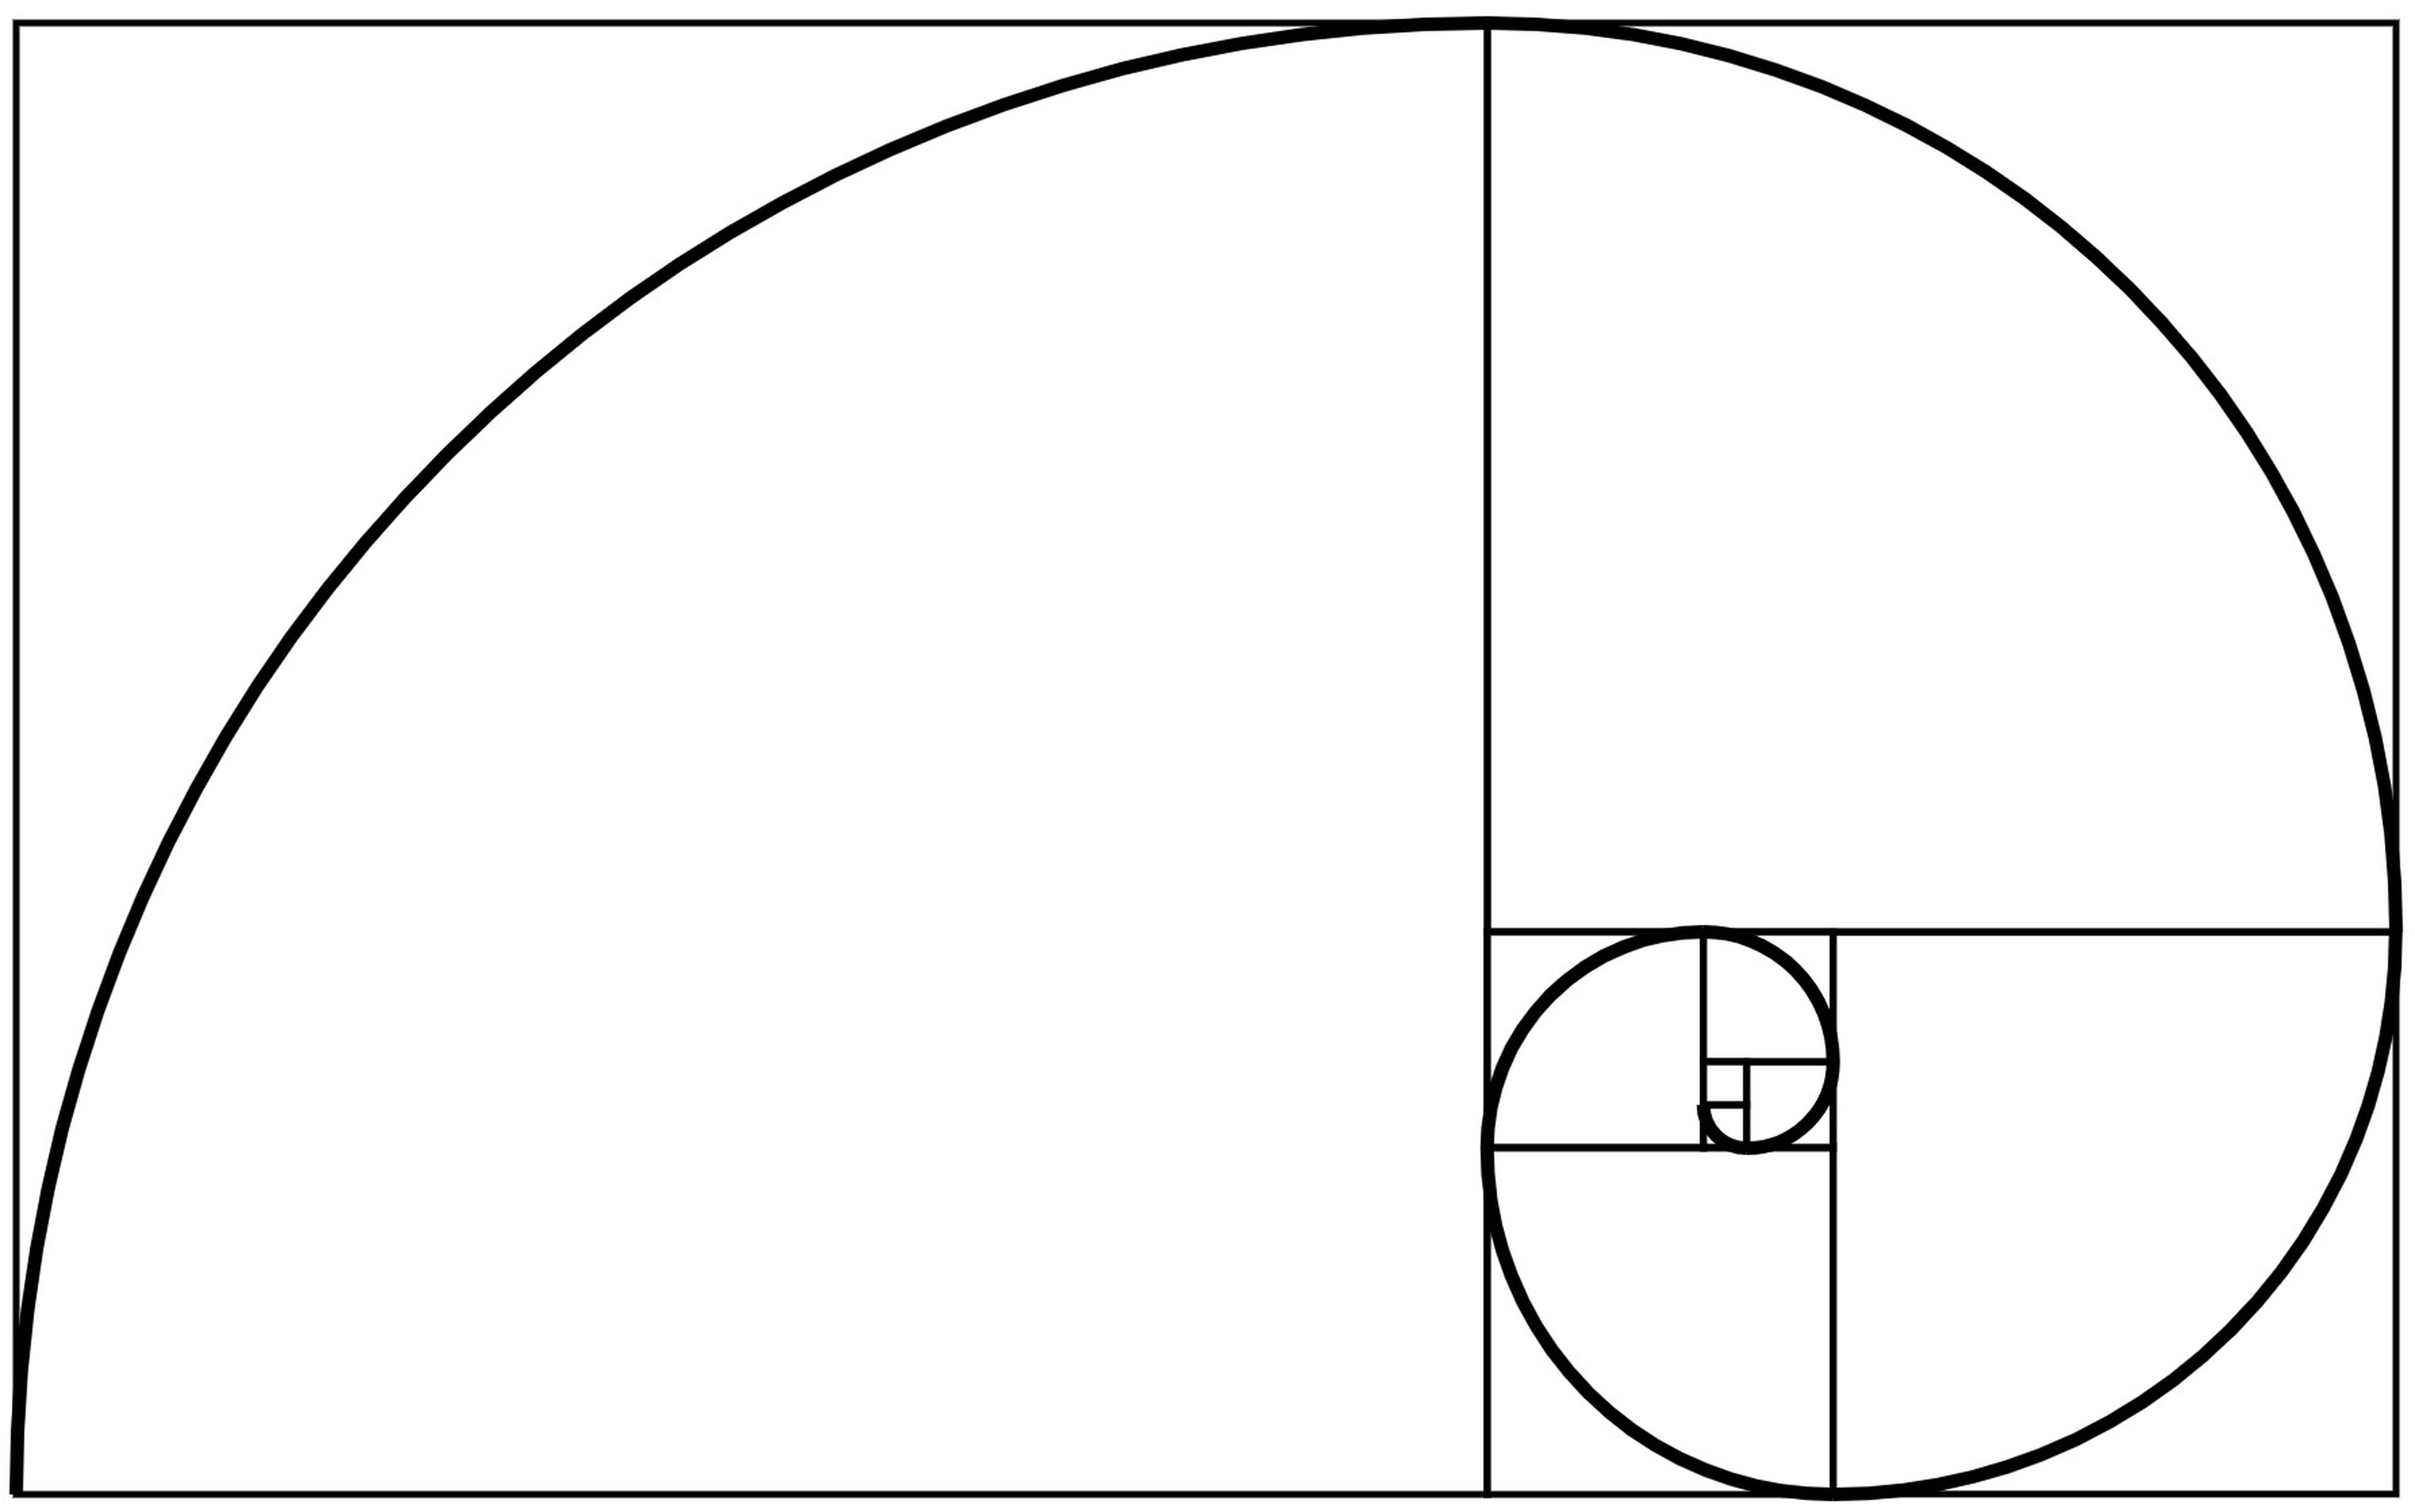 Sucesión de Fibonacci